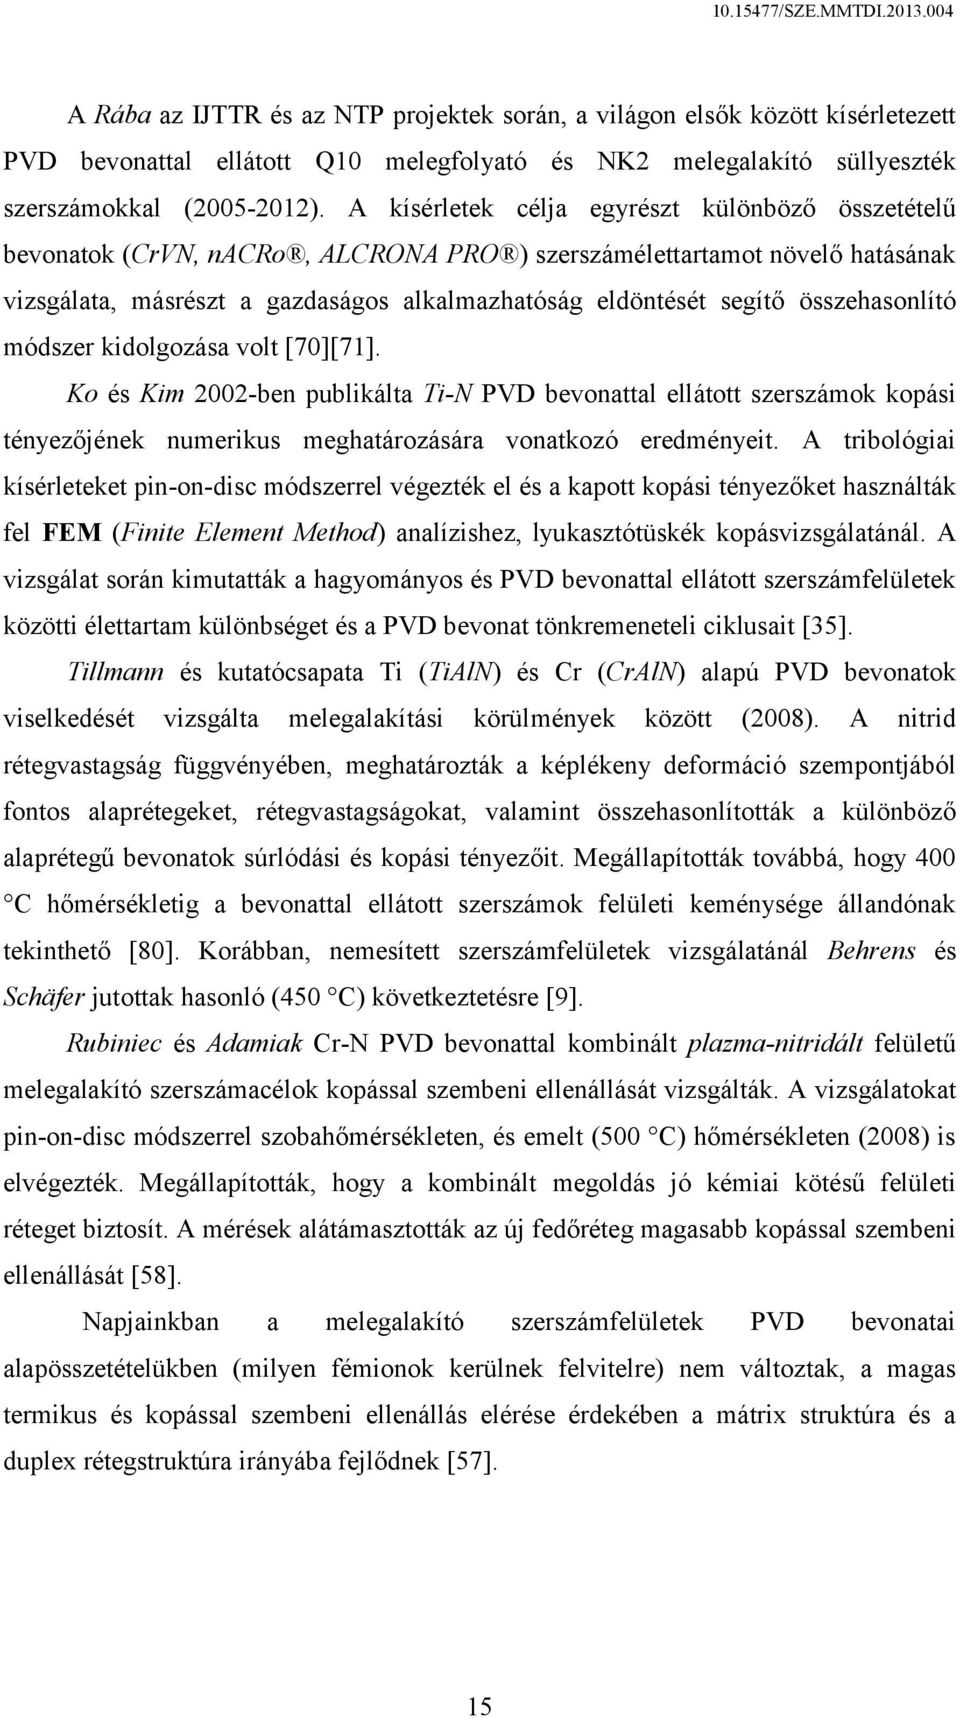 összehasonlító módszer kidolgozása volt [70][71]. Ko és Kim 2002-ben publikálta Ti-N PVD bevonattal ellátott szerszámok kopási tényezőjének numerikus meghatározására vonatkozó eredményeit.